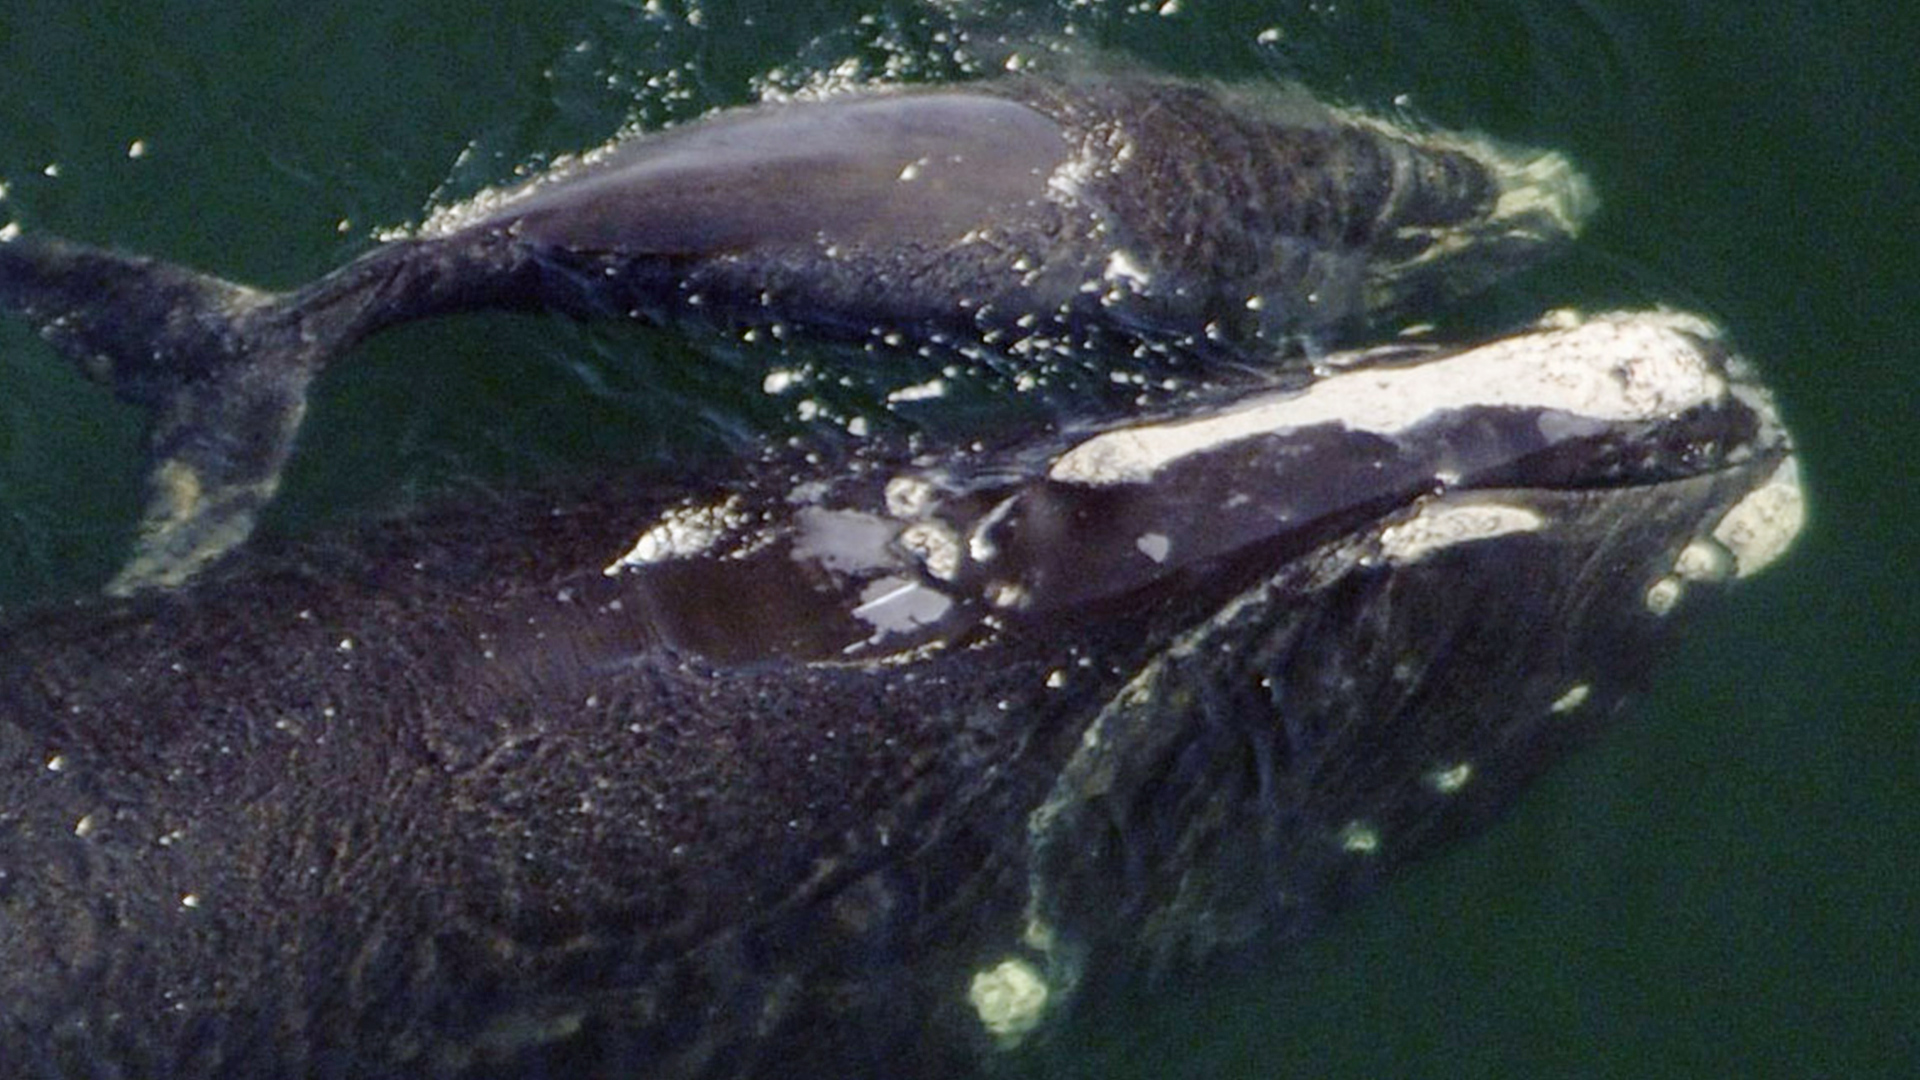 Tête d’une baleine noire visible en transparence dans l’eau avec un baleineau à ses côtés. Le dessus de sa tête avec son évent fait surface, mais ses narines sont toujours fermées.